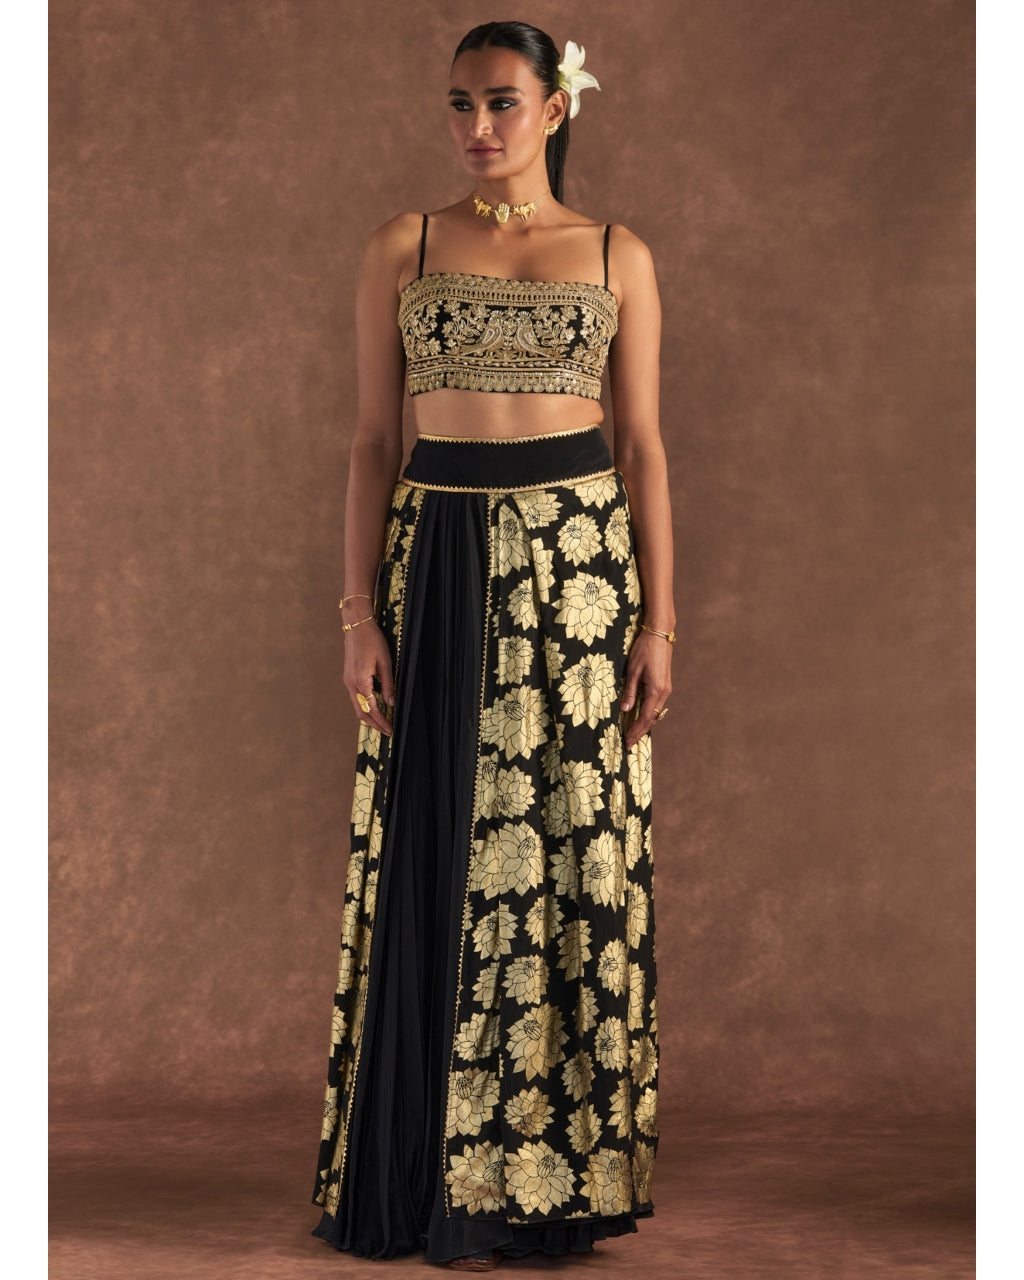 Royal Black Lehenga Skirt for Wedding Wear Online #PN71 | Black and gold  lehenga, Black lehenga, Lehenga skirt